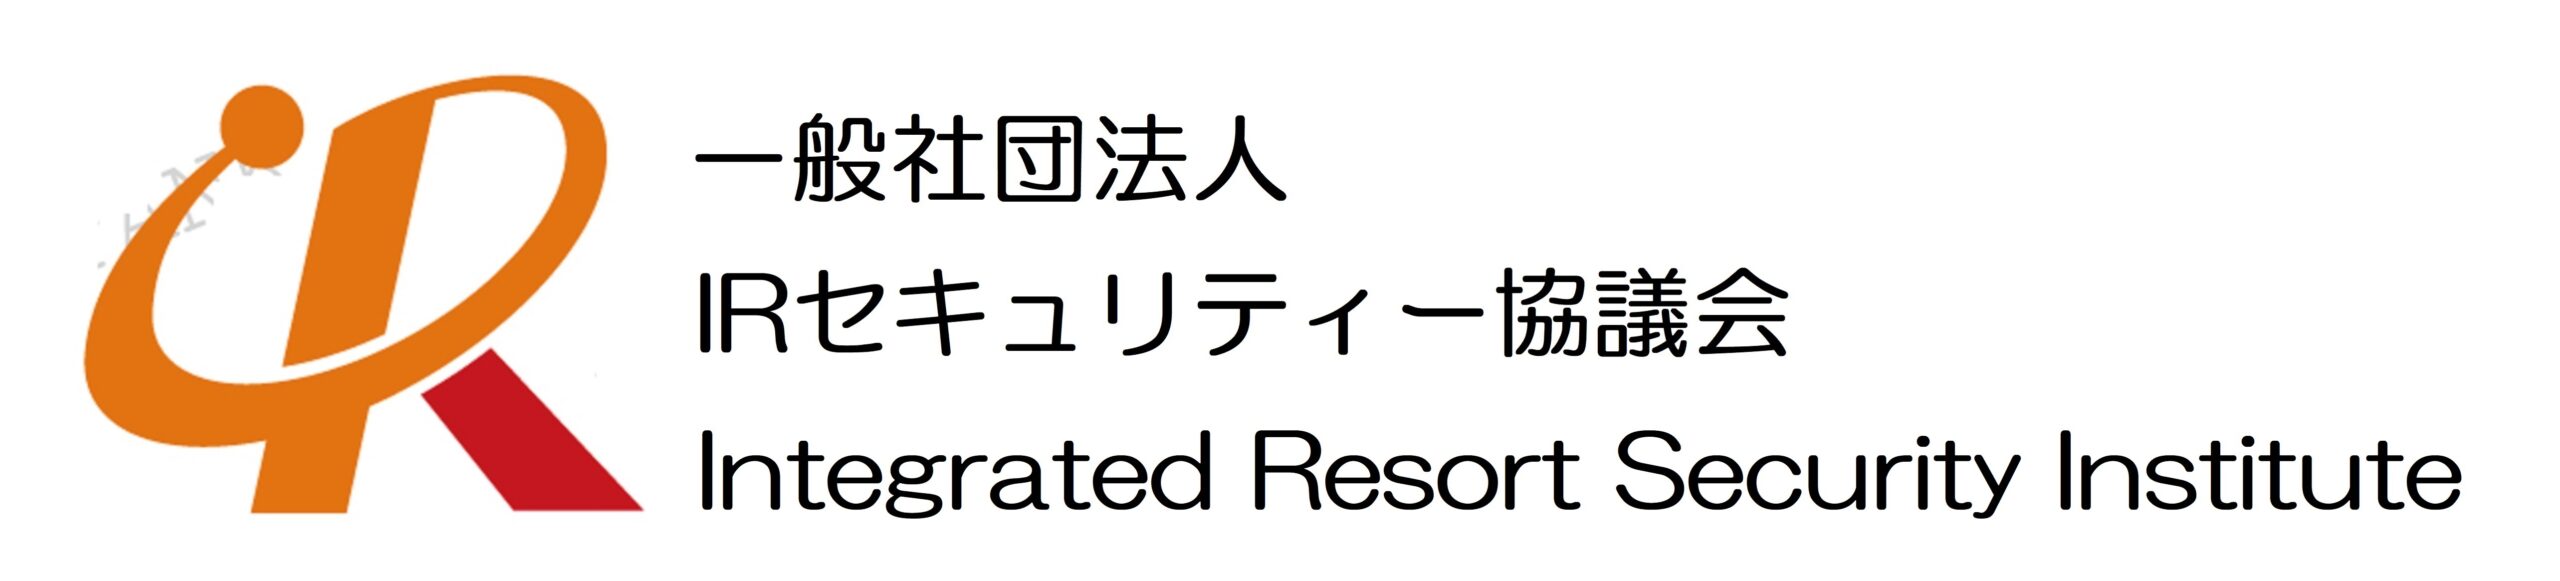 Integrated Resort Security Institute